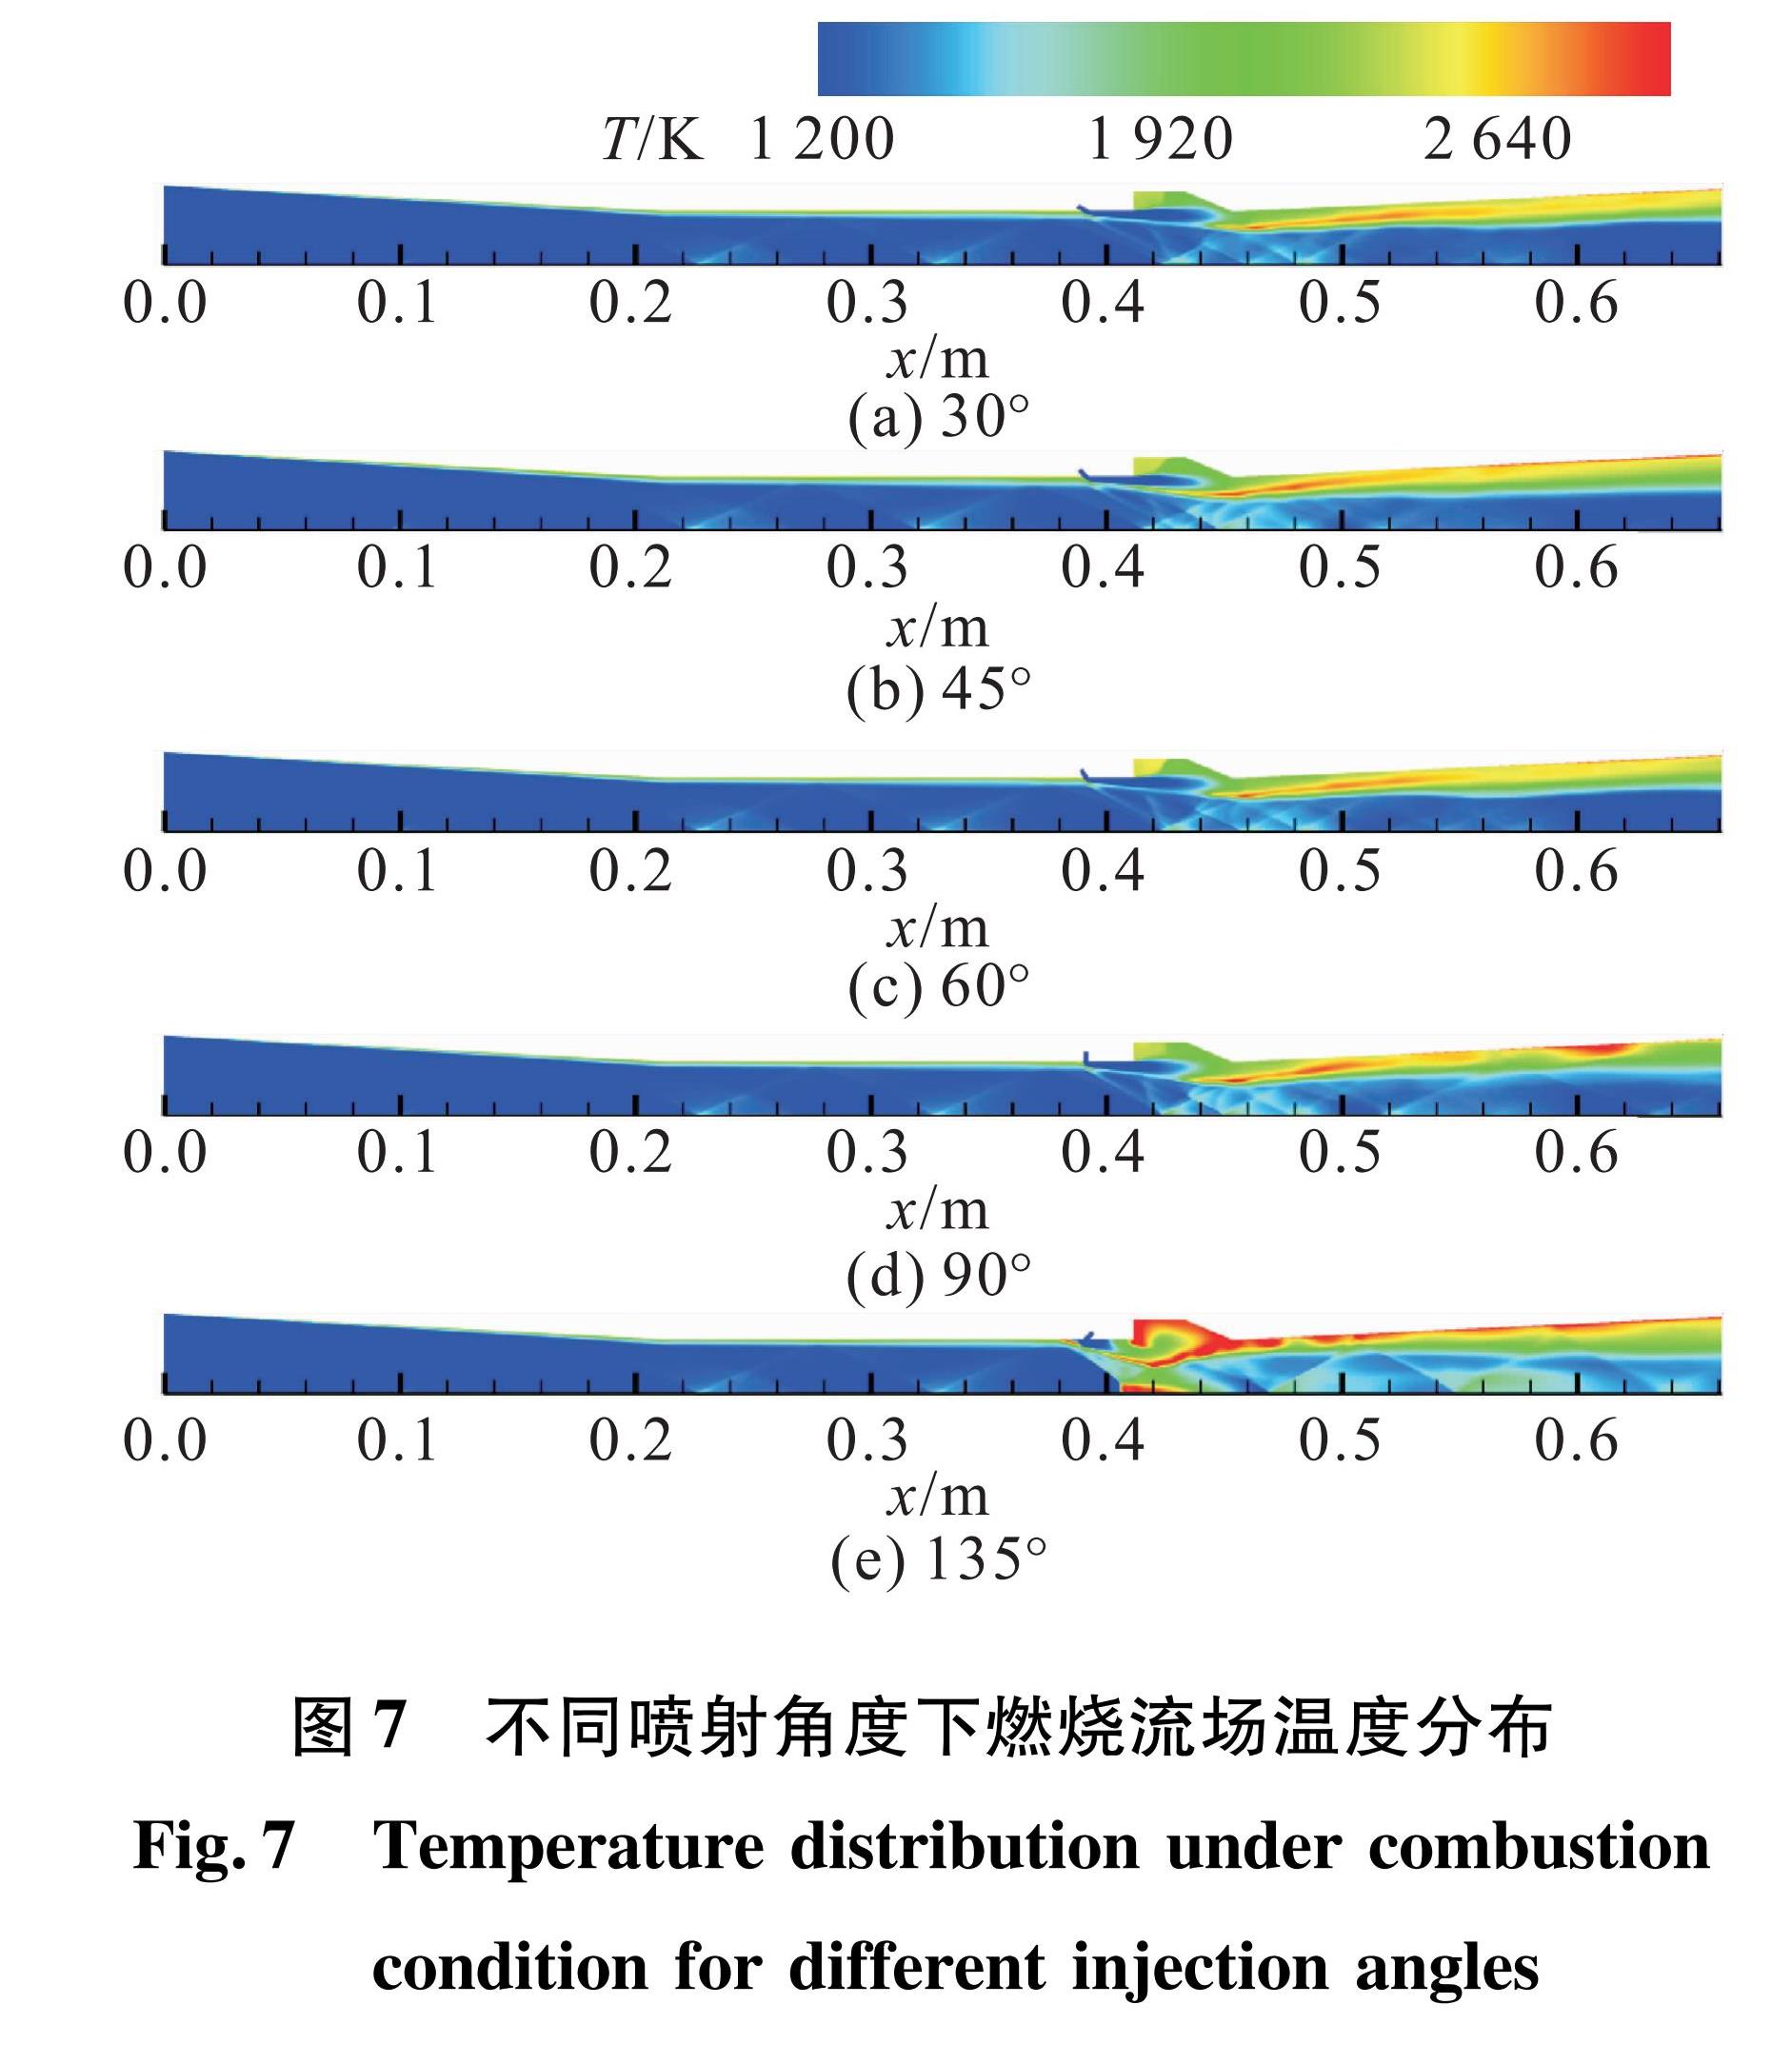 图7 不同喷射角度下燃烧流场温度分布<br/>Fig.7 Temperature distribution under combustion condition for different injection angles 